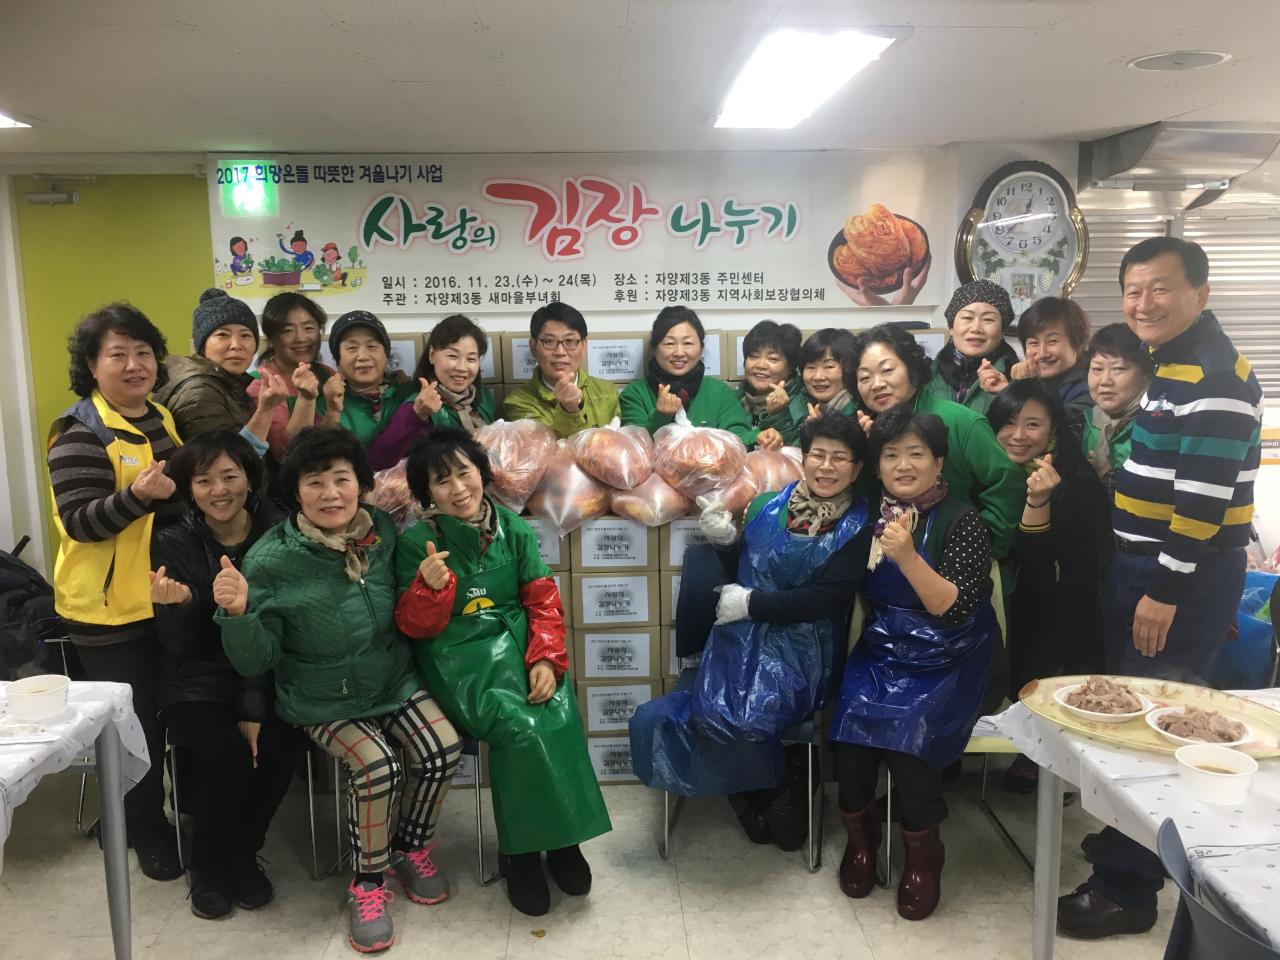 2017 희망온돌 따뜻한겨울나기사업 사랑의 김장나누기 행사 